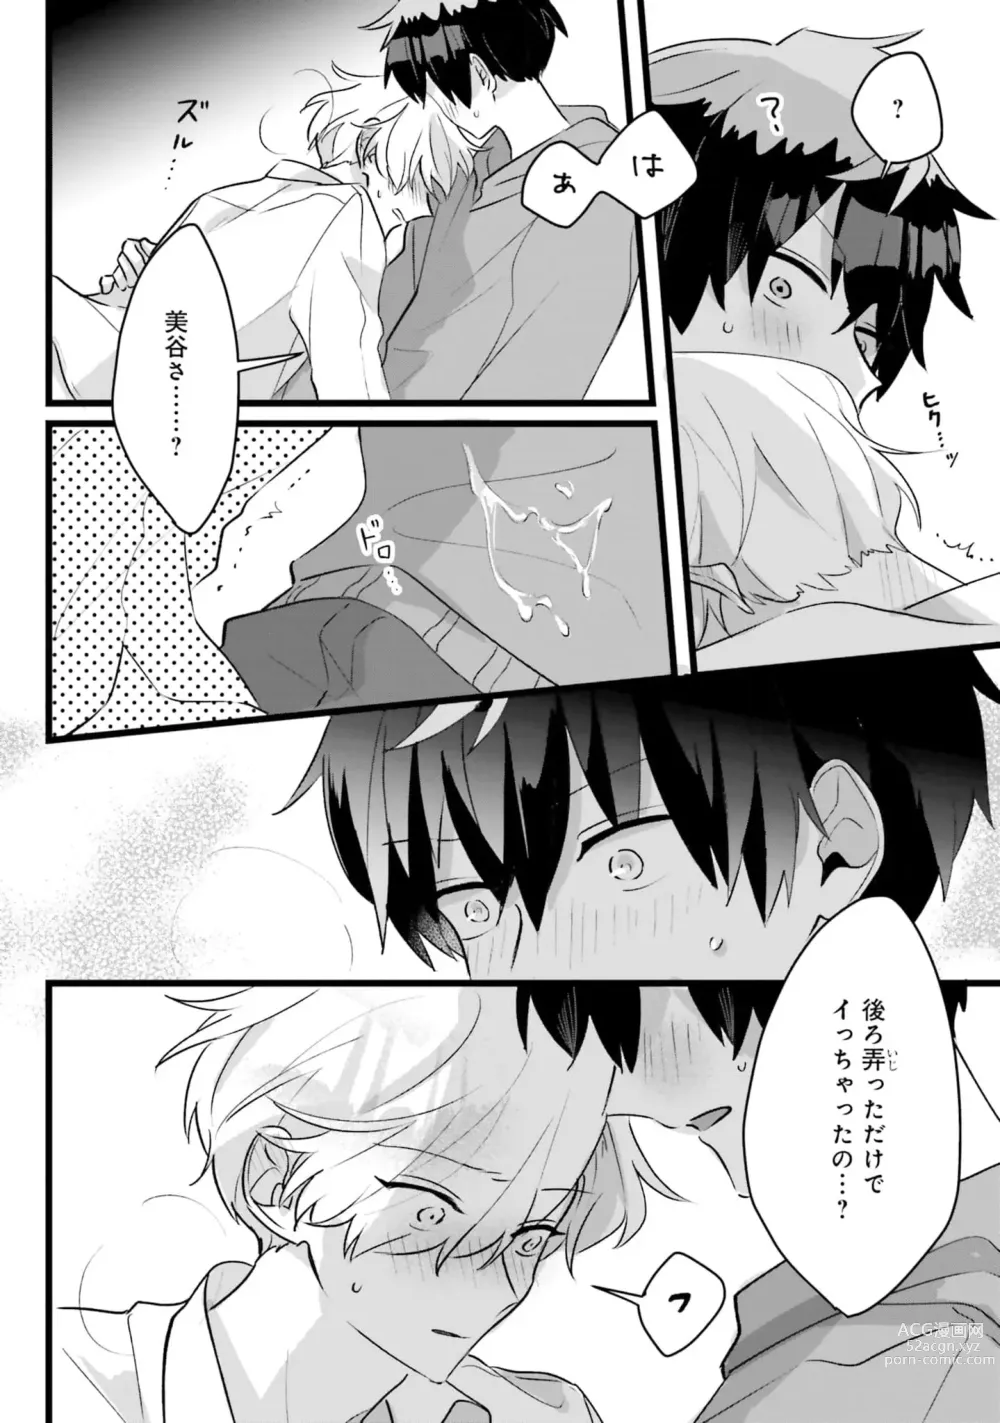 Page 152 of manga Shishunki ni wa Me no Doku desu